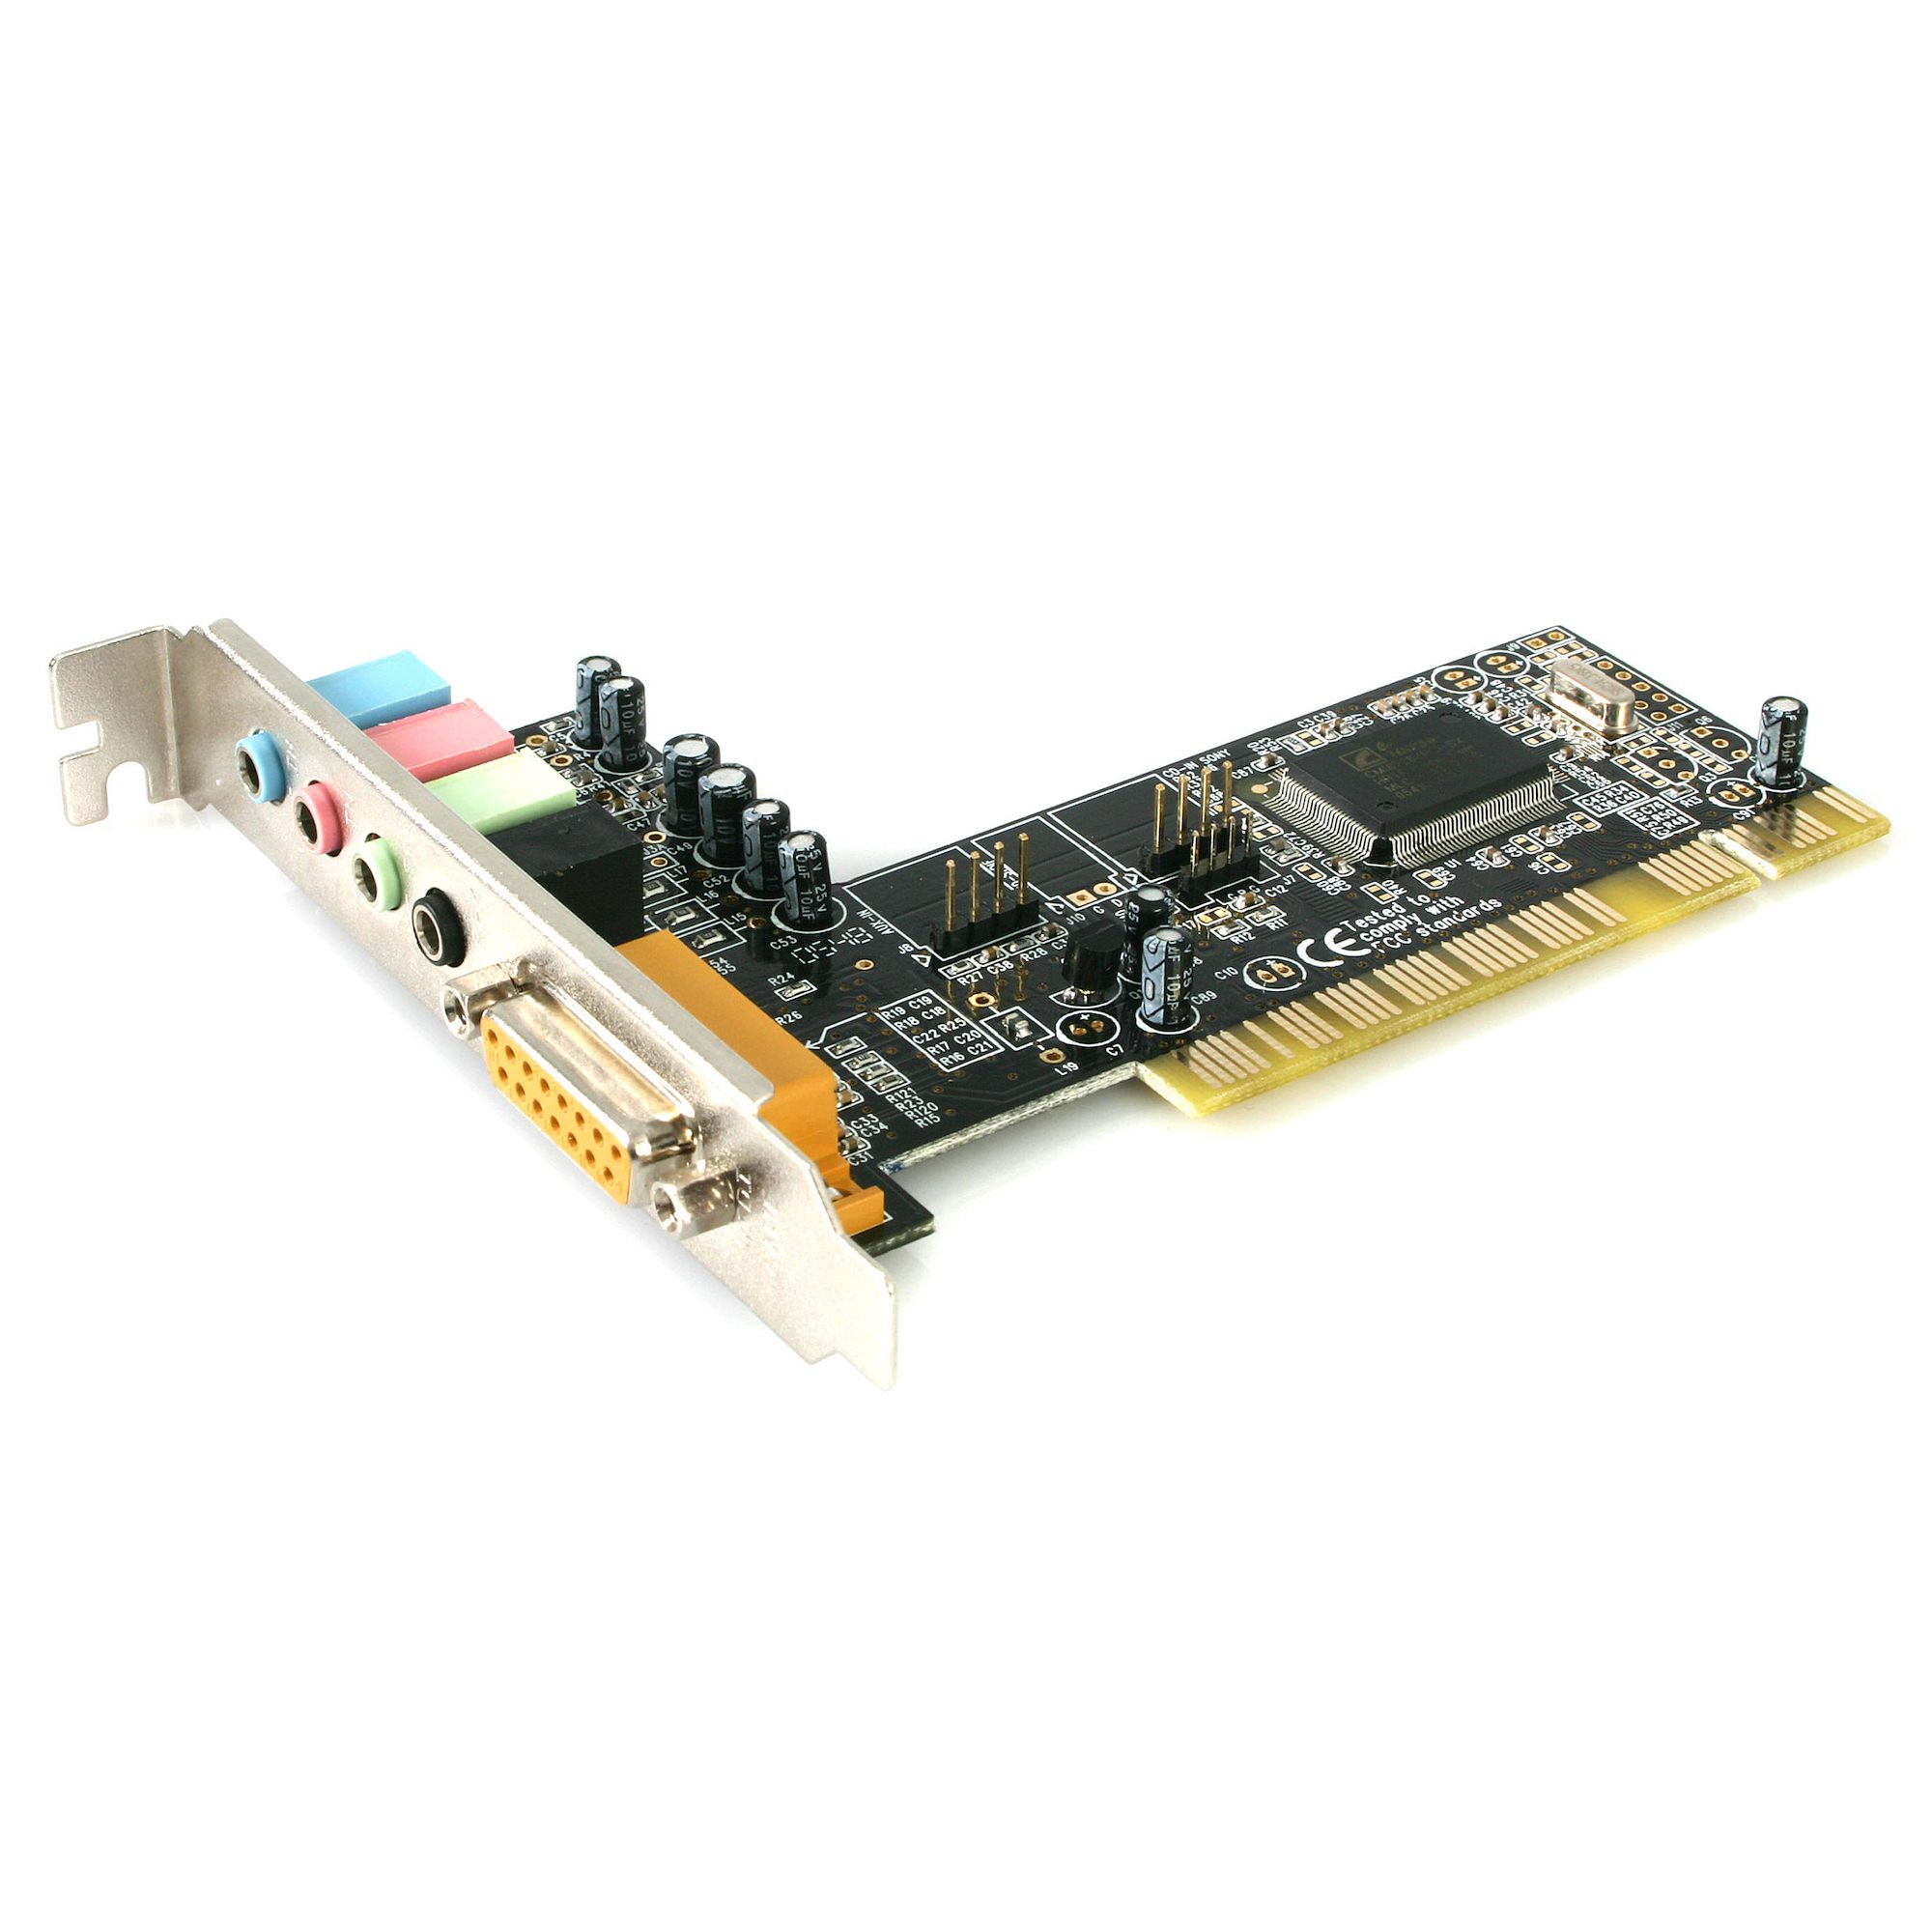 Tarjeta de sonido PCIe para PC Windows, tarjeta de sonido interna 5.1 con  soporte de perfil bajo, tarjeta de audio PCI-e estéreo 3D, chip CMI8738 de